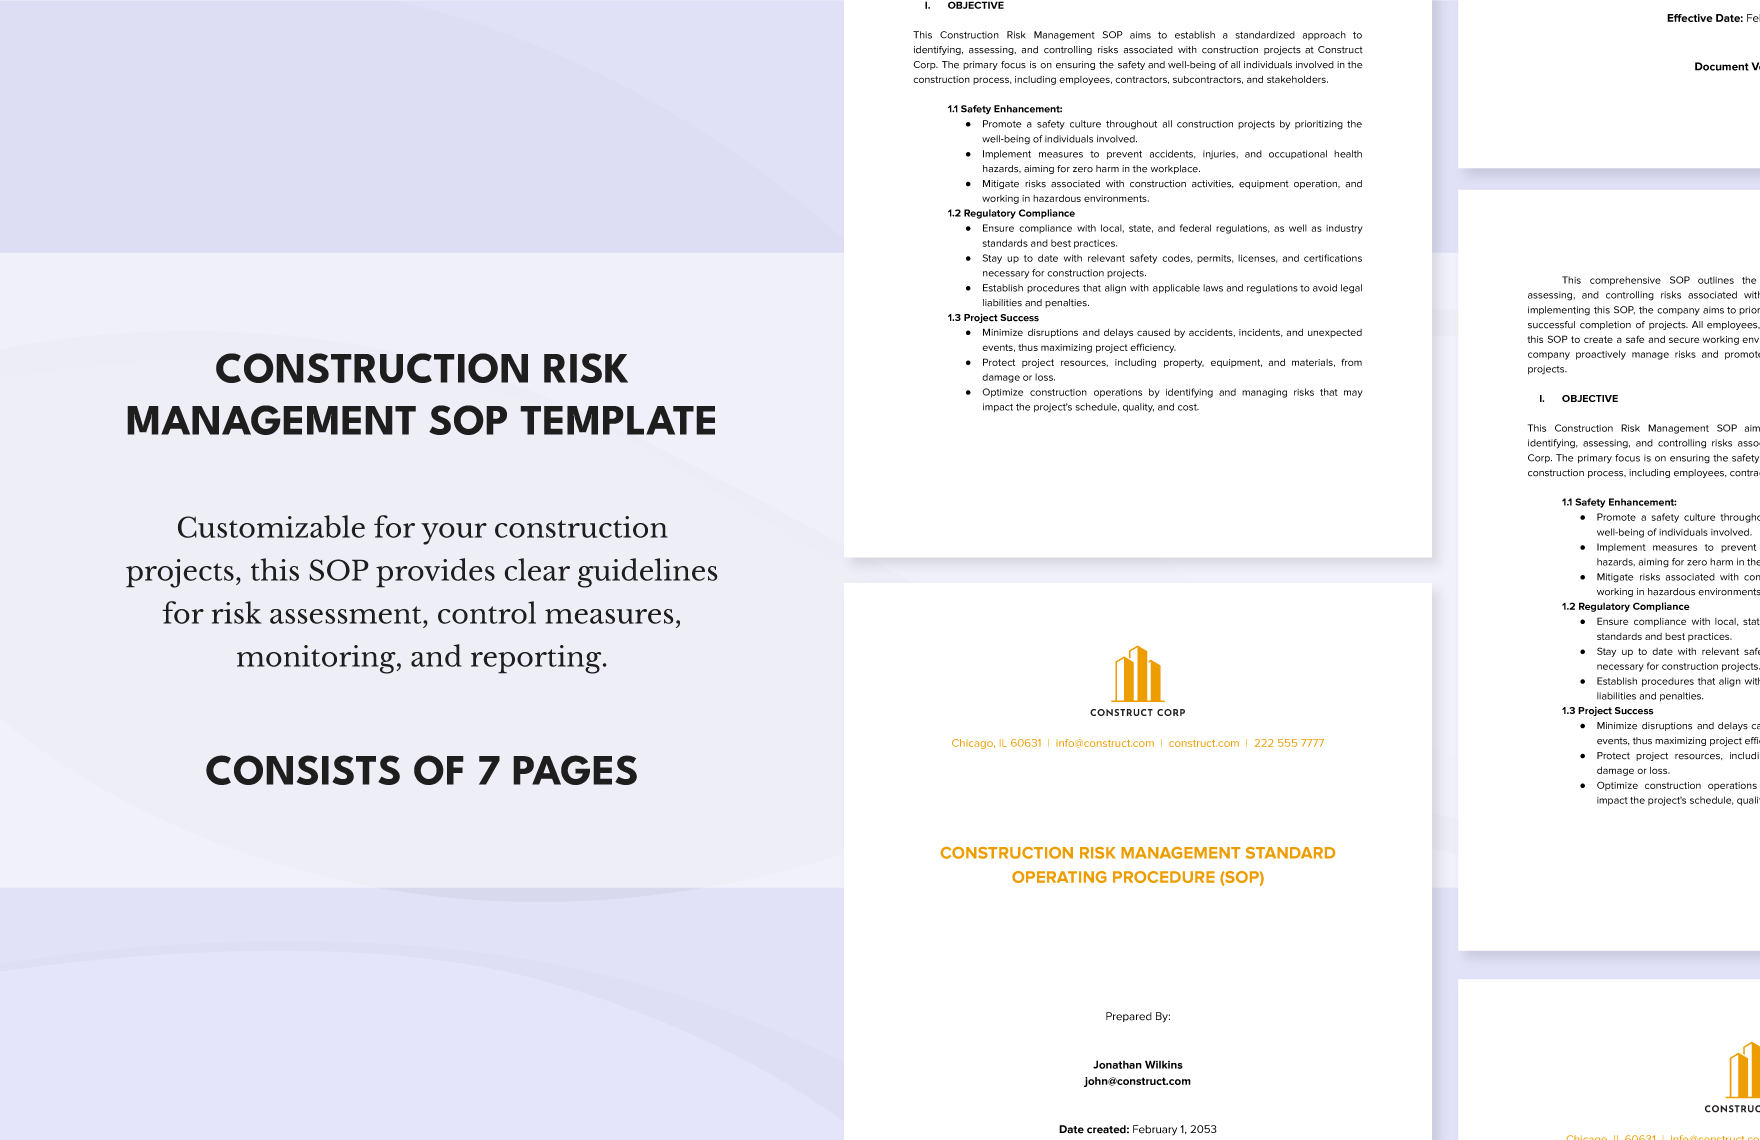 Construction Risk Management SOP Template